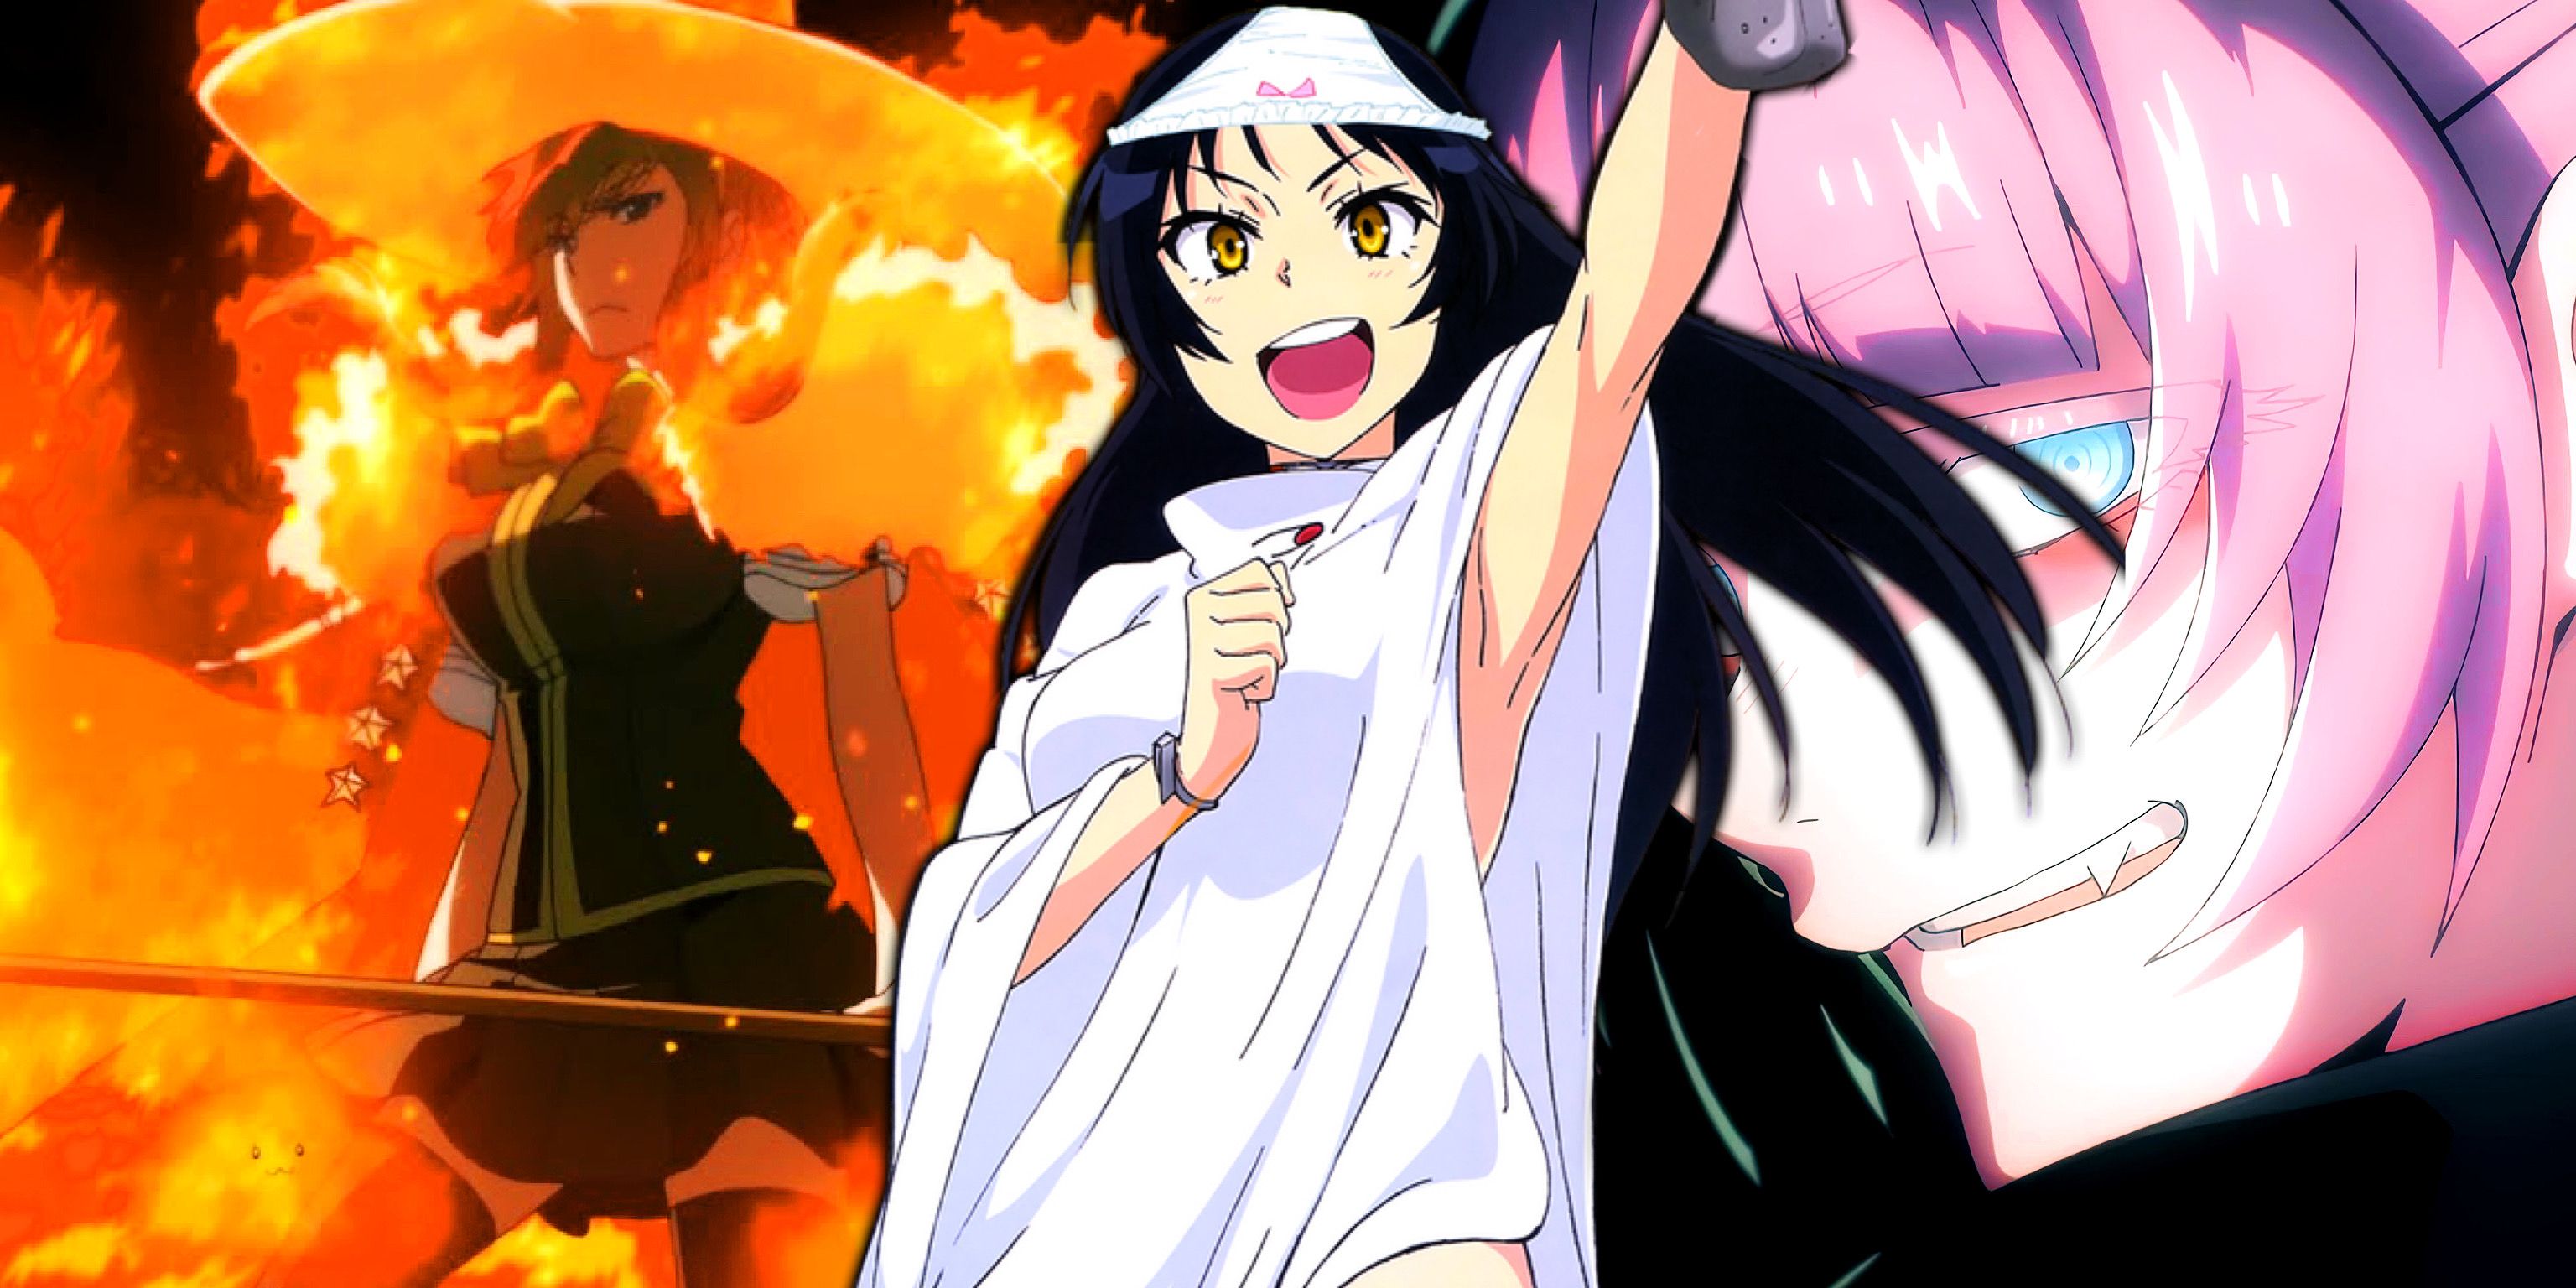 Ayaka covered in flames, Nanakusa smirking, and Ayame posing.